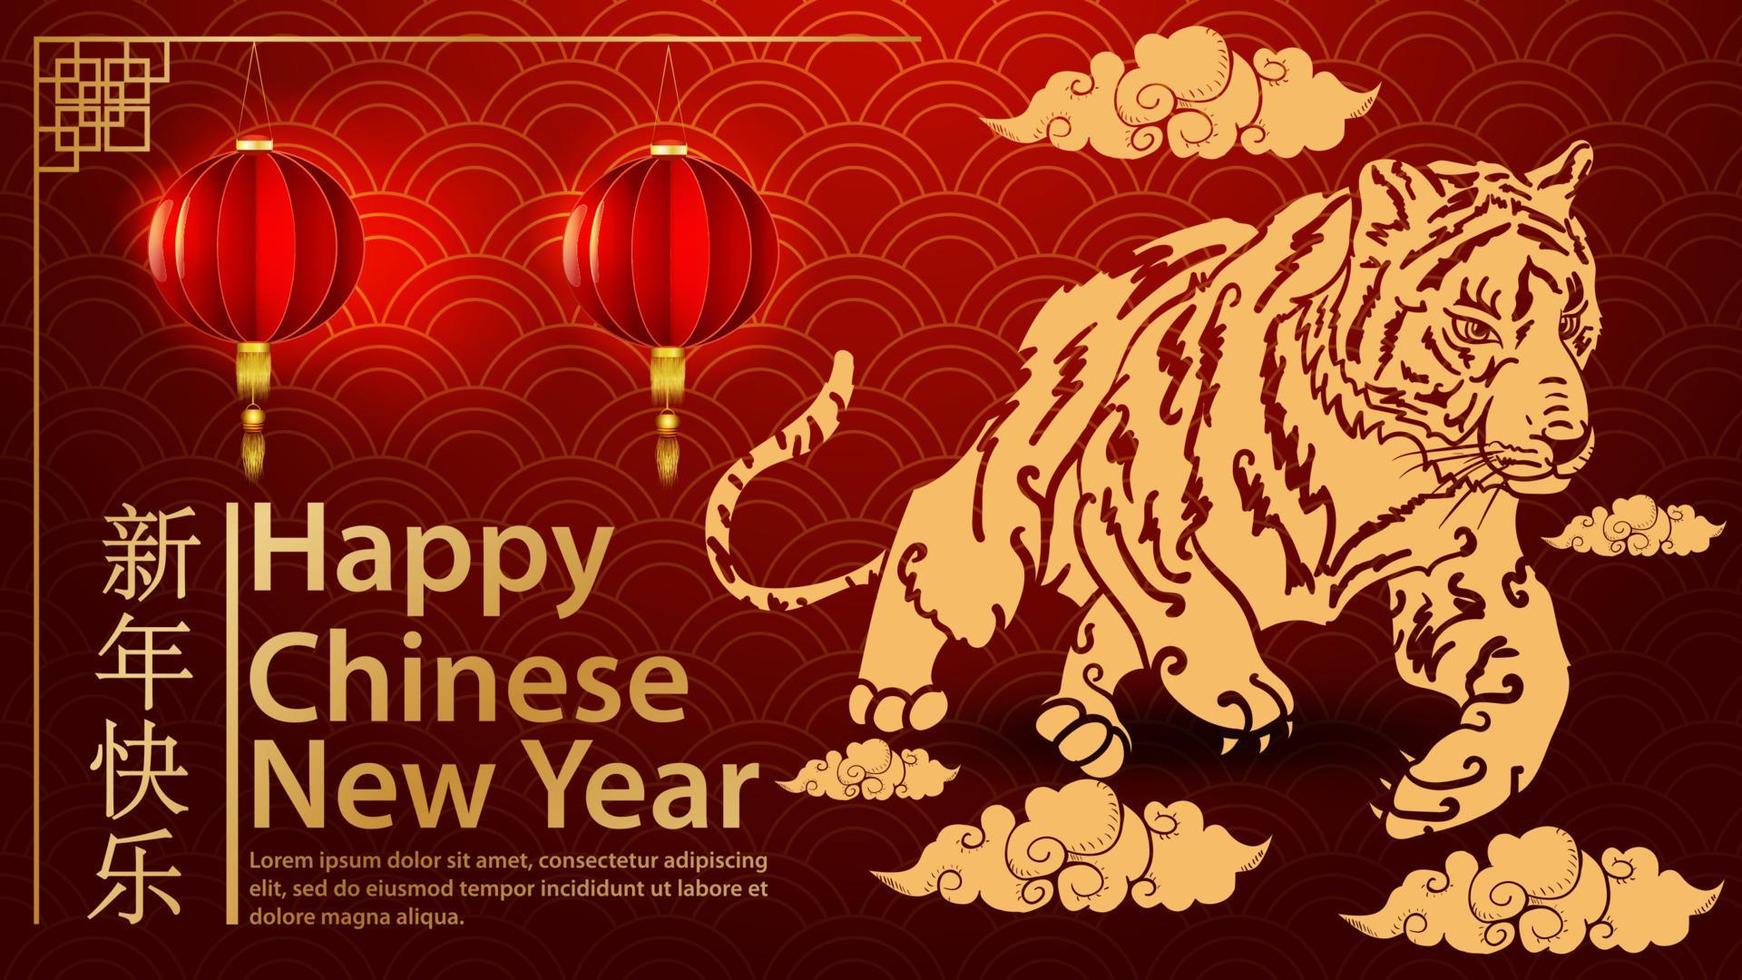 tigre salta sobre o símbolo das nuvens do ano novo chinês e a inscrição parabéns onda de fundo vermelho vetor